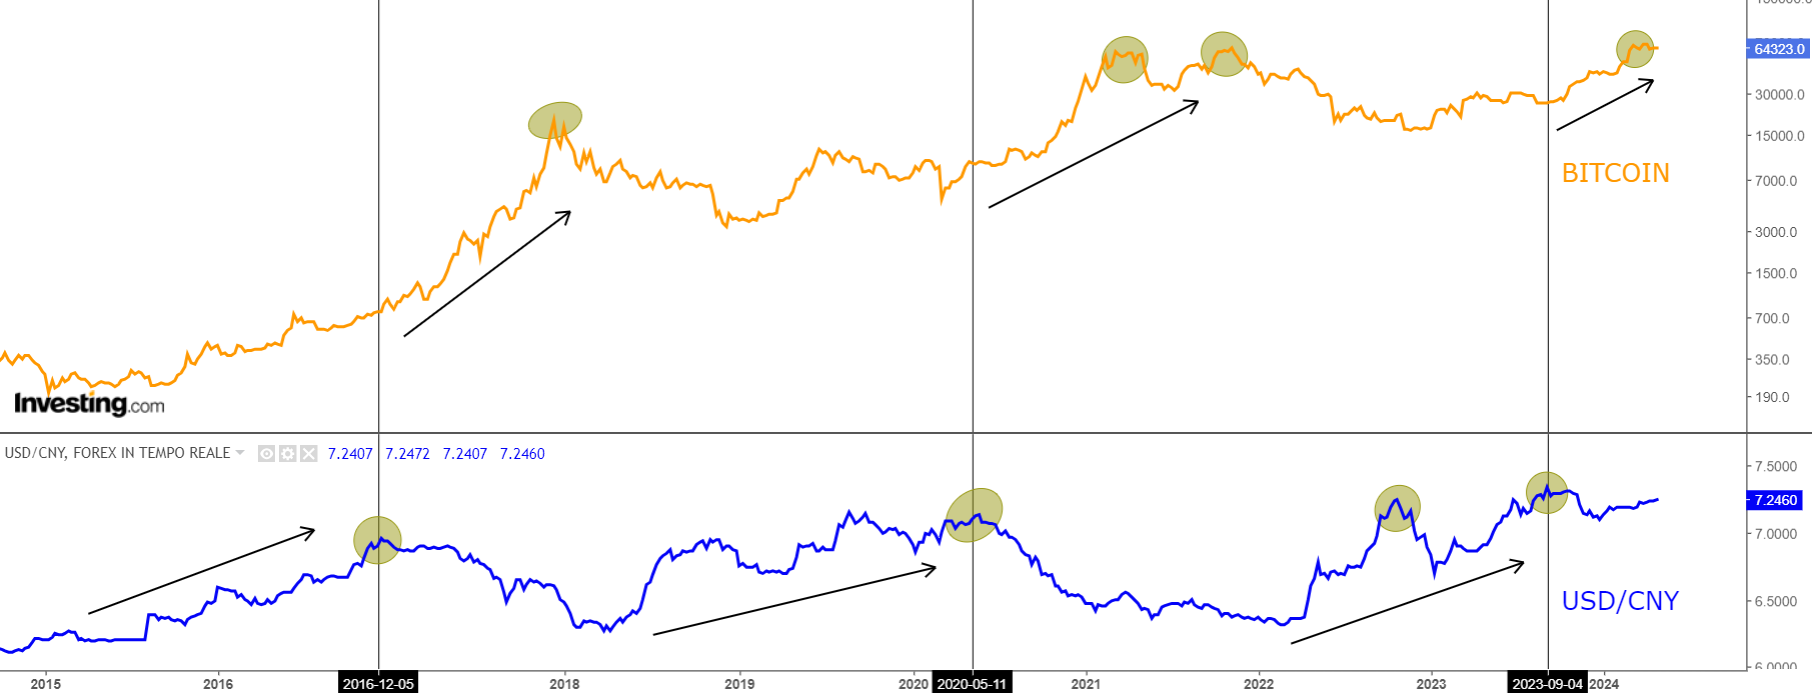 Bitcoin vs USD/CNY